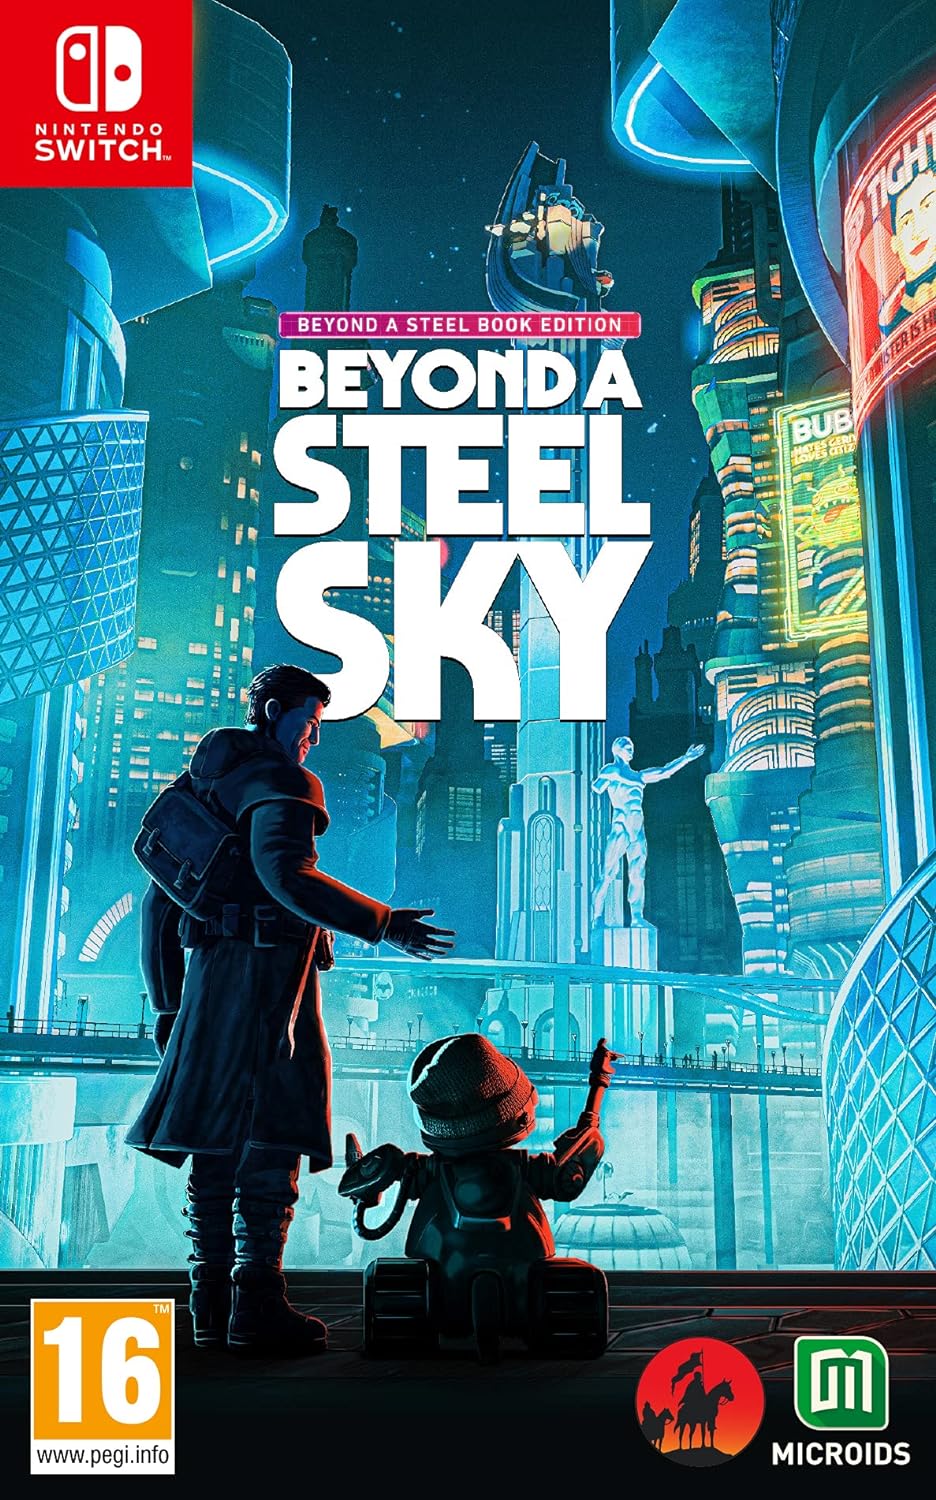 Beyond A Steel Sky - Steelbook Edition (Nintendo Switch) - Open Box